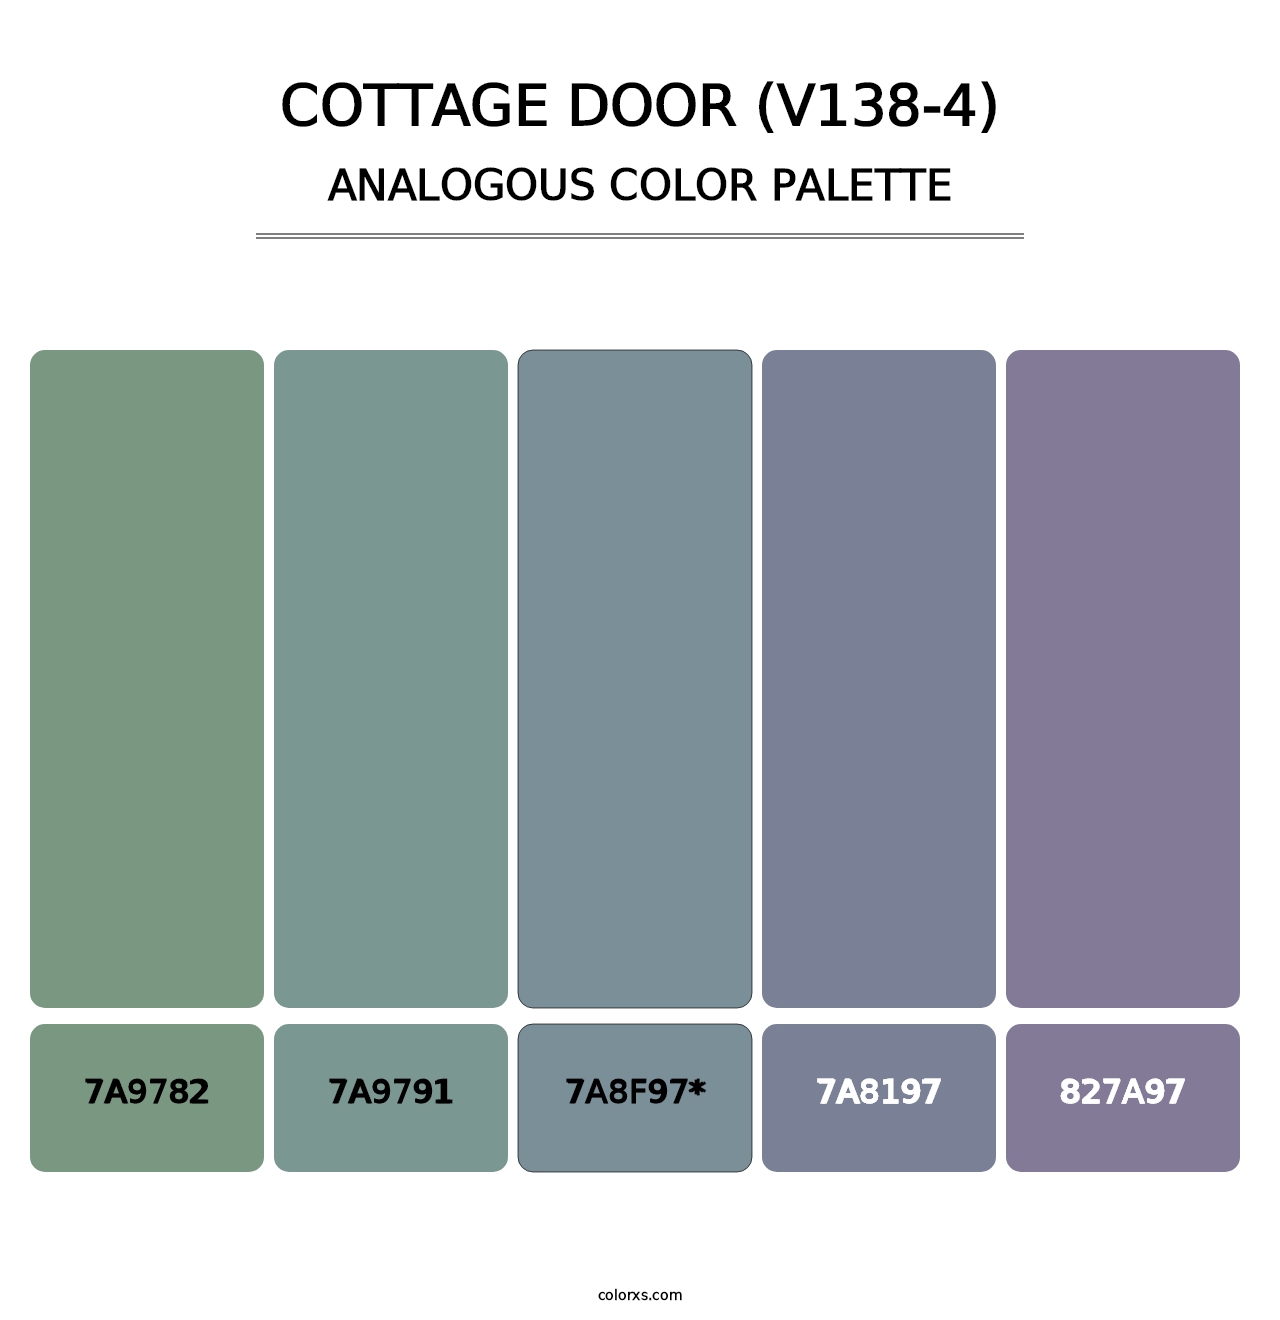 Cottage Door (V138-4) - Analogous Color Palette